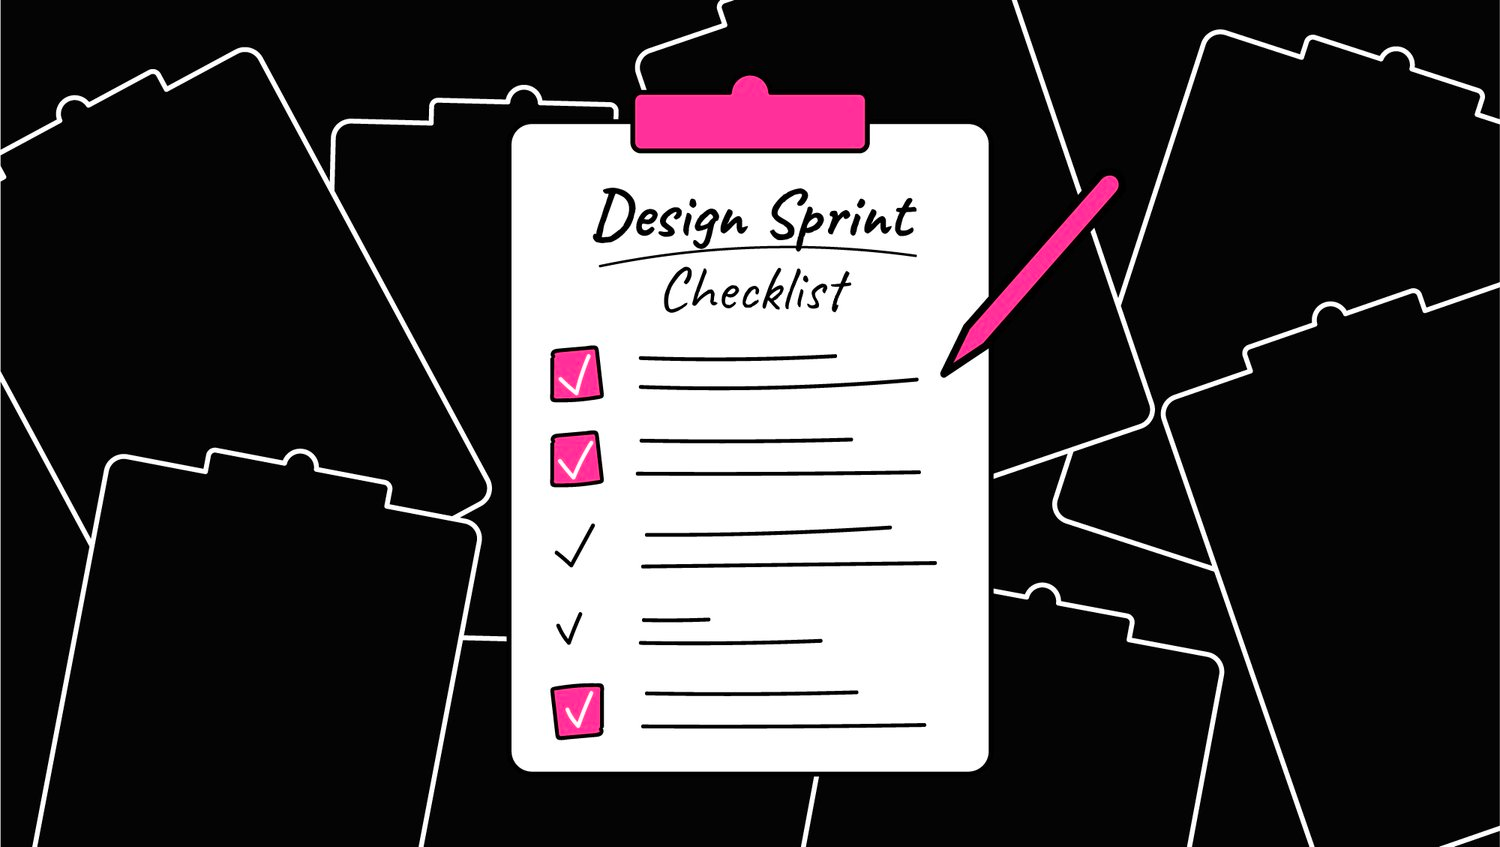 Design Sprint Guide